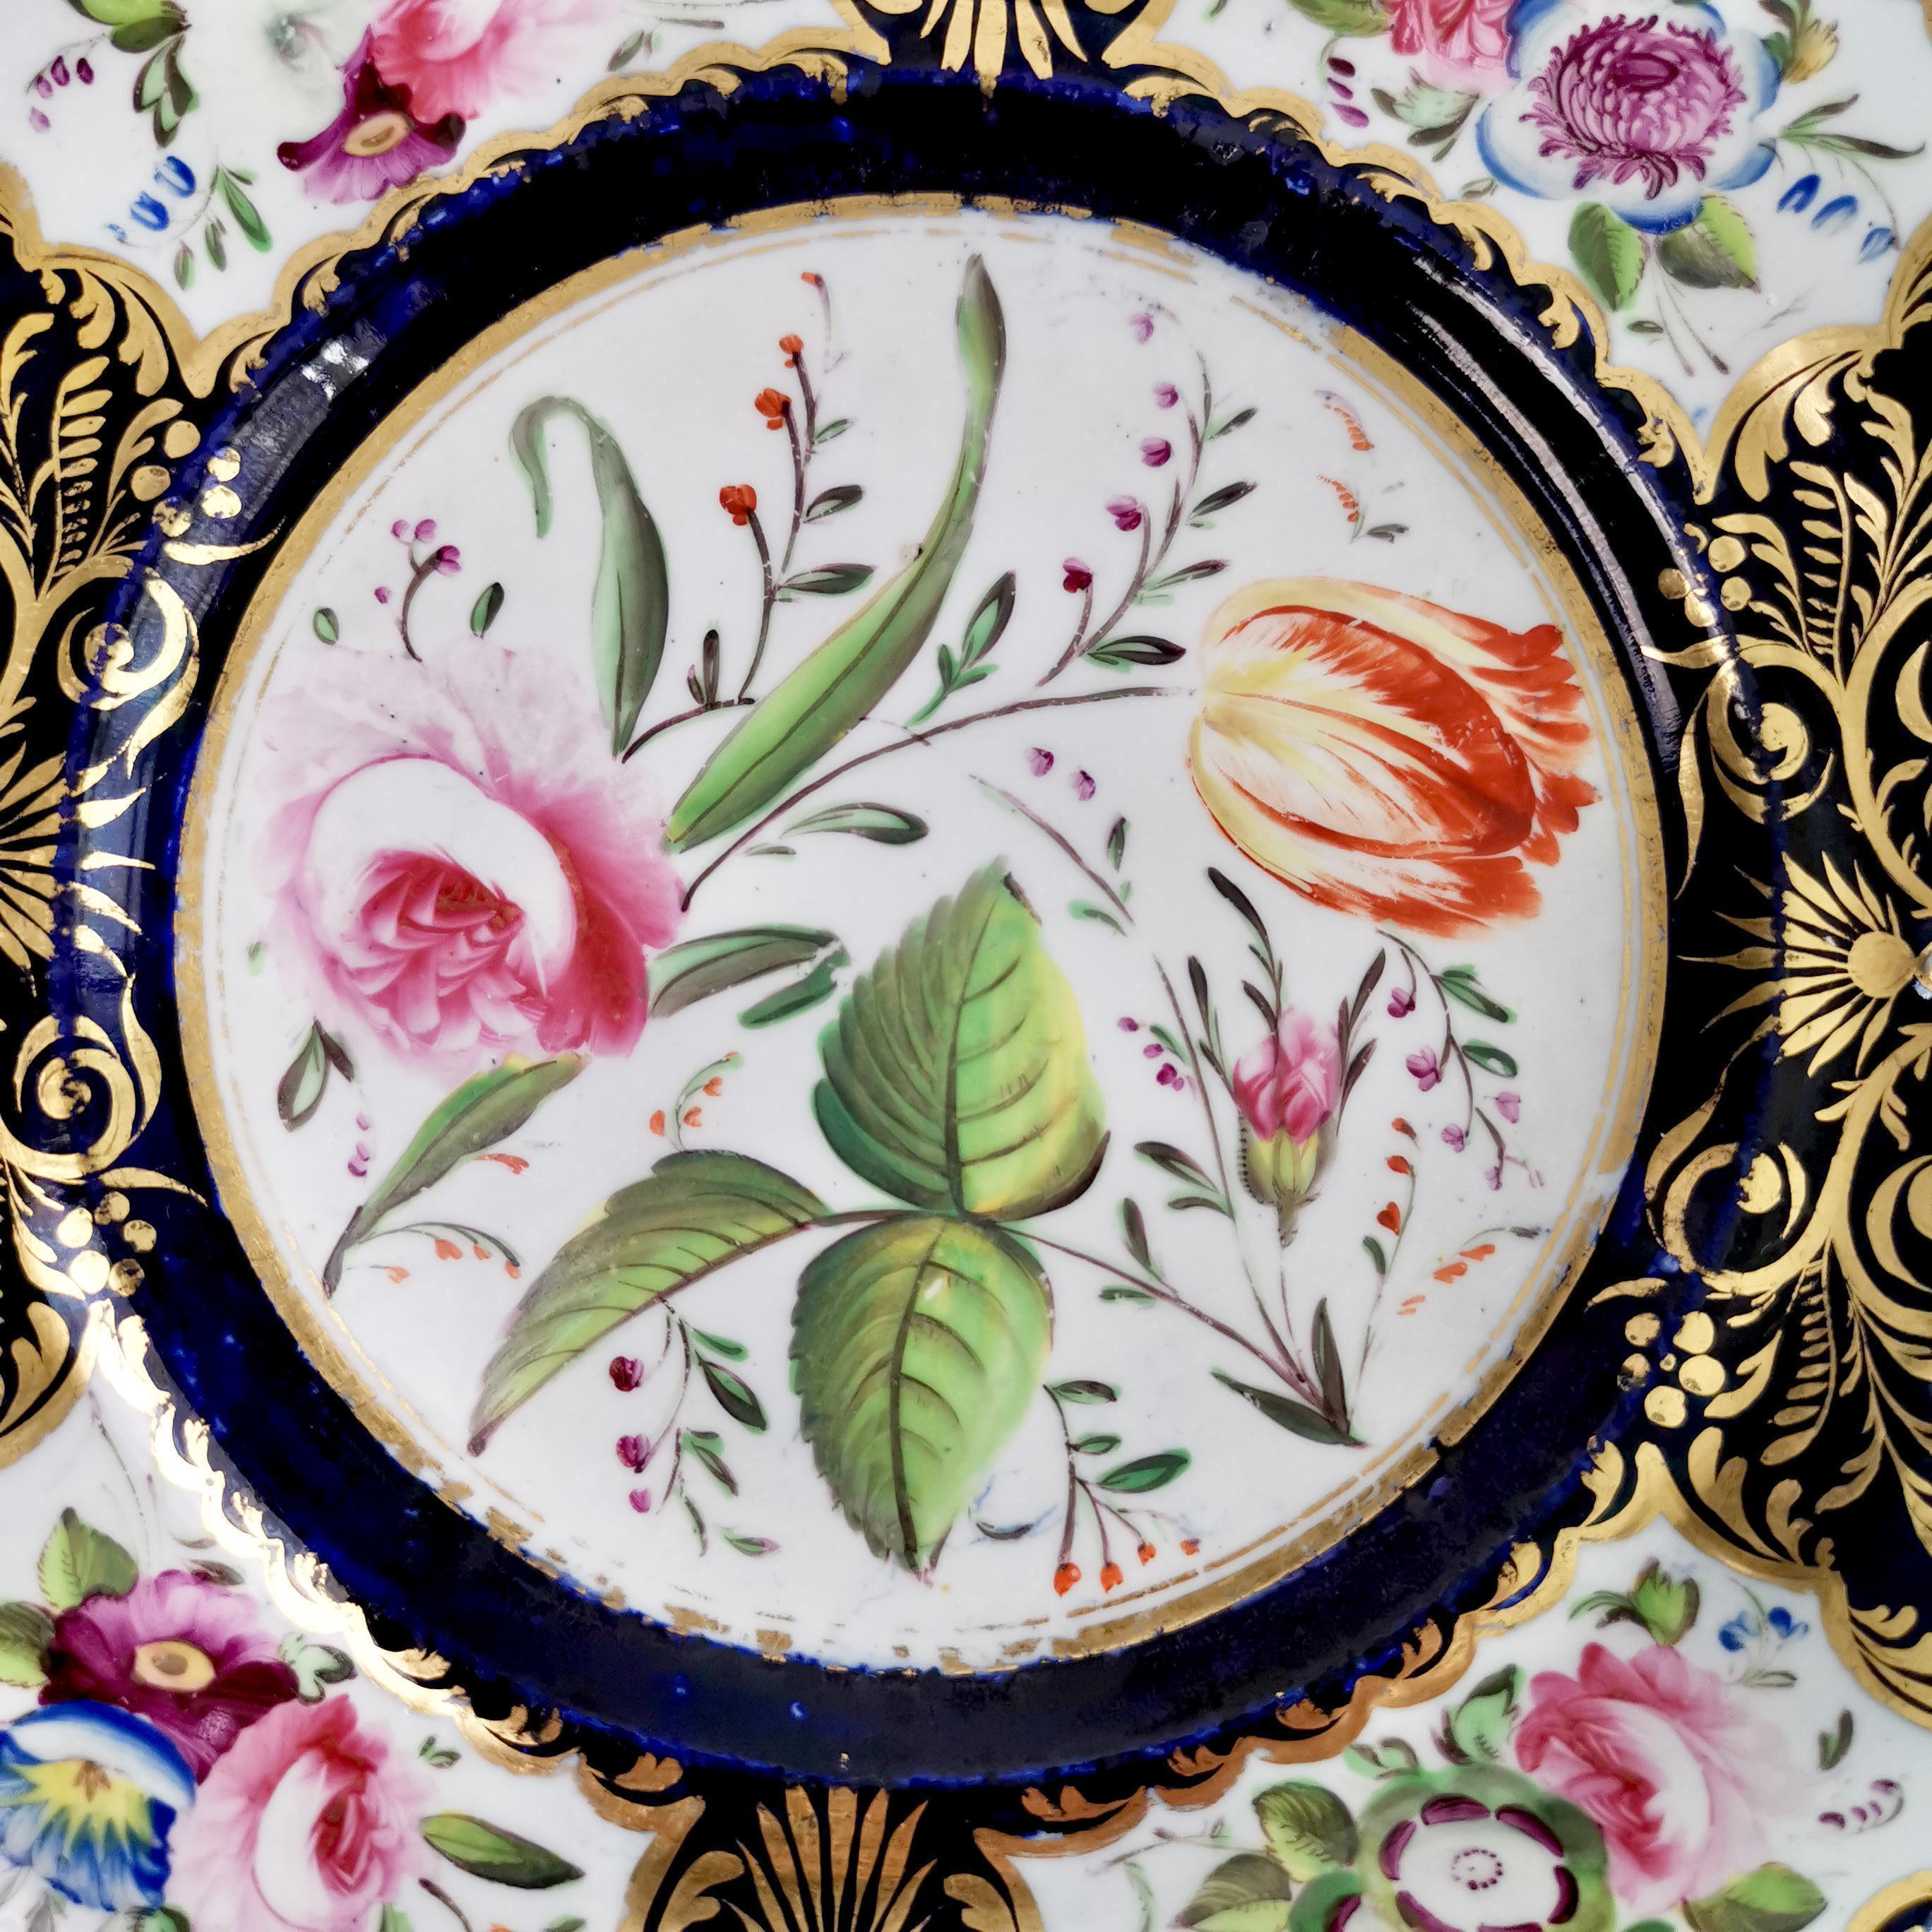 New Hall Porcelain Dessert Service, Cobalt Blue with Flowers, Regency 1824-1830 14